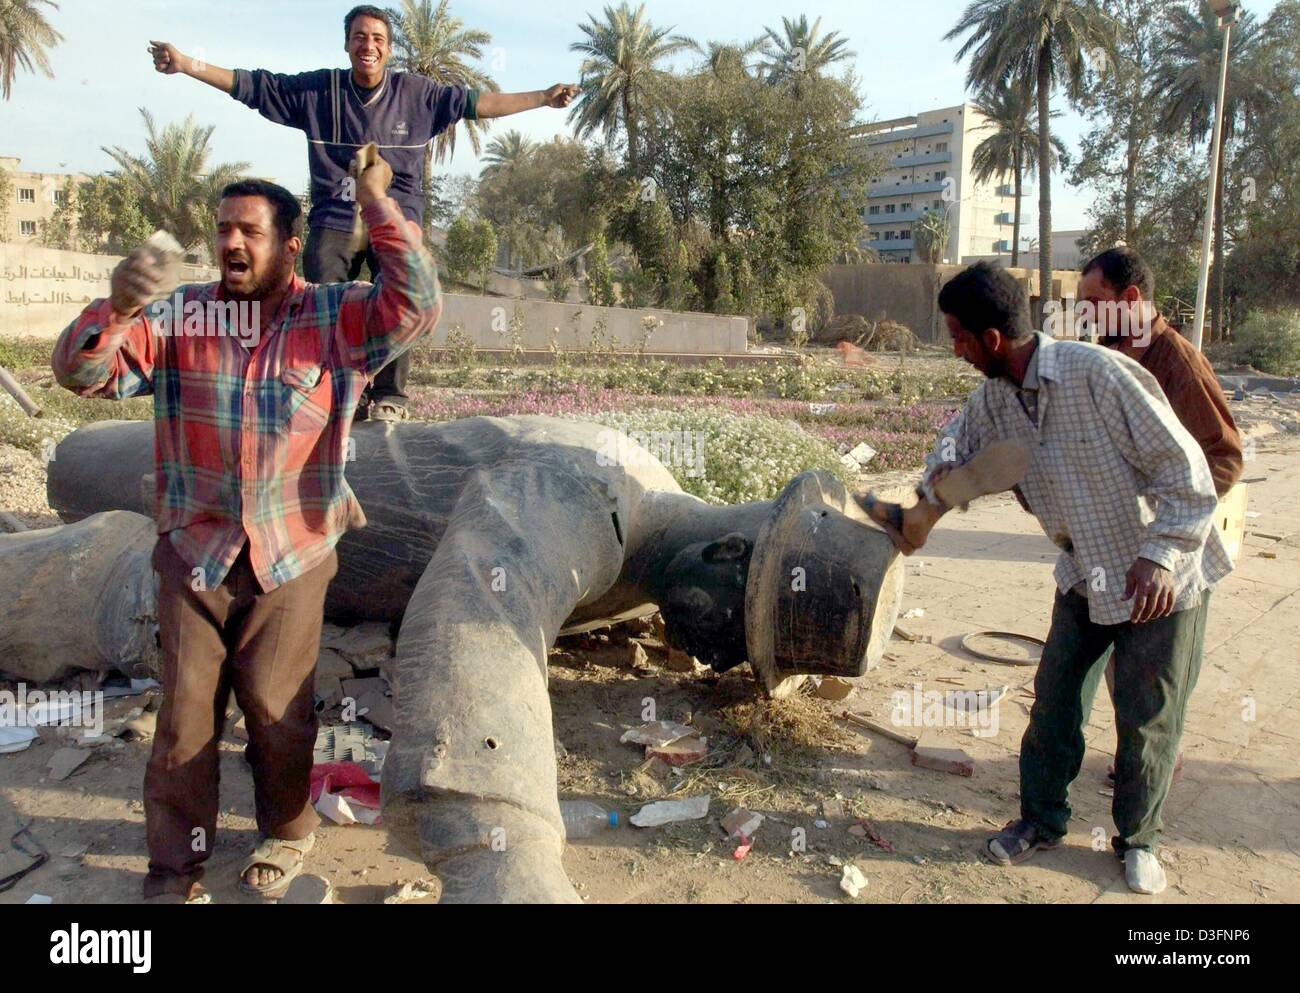 (Afp) - Les Irakiens célèbrent autour d'un renversé statue de leader irakien Saddam Hussein, le 12 avril 2003. Les forces américaines ont lancé un appel à la police irakienne pour aider à rétablir l'ordre dans la capitale irakienne. Banque D'Images